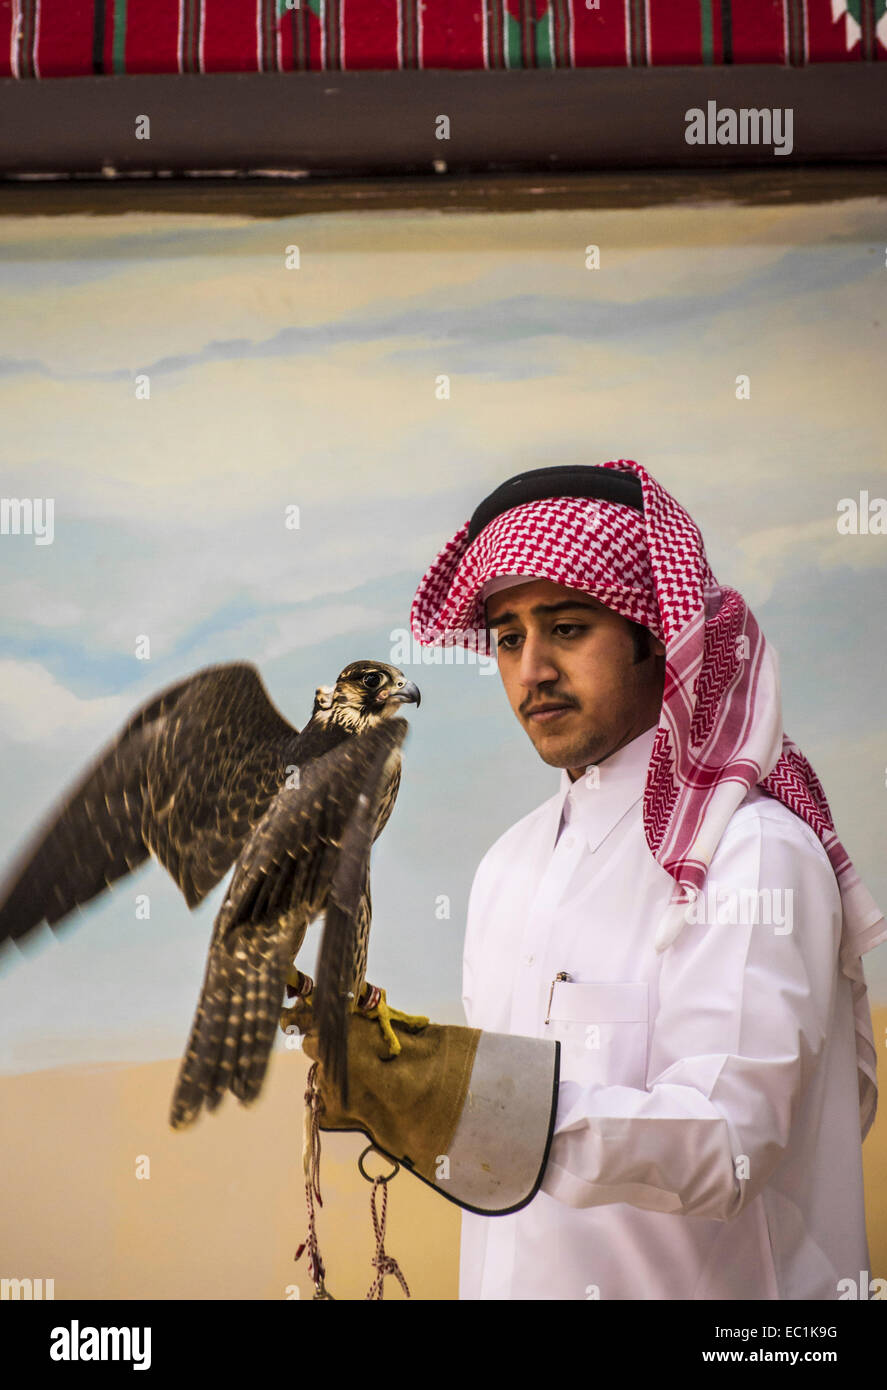 Arab esaminando falcon nella città di Doha shop. Il Falcon è uccello nazionale degli Emirati arabi uniti, Qatar, Arabia Saudita e Oman, un simbolo di status per royal famiglie arabe. La Falconeria è un sport preferito nella Penisola Arabica, mantenendo il patrimonio del deserto. Il prezzo dei falchi sul mercato Qatar è salito a più di US$275k, bouoyed da un aumento della domanda interna sul retro di un recente festival. Foto Stock